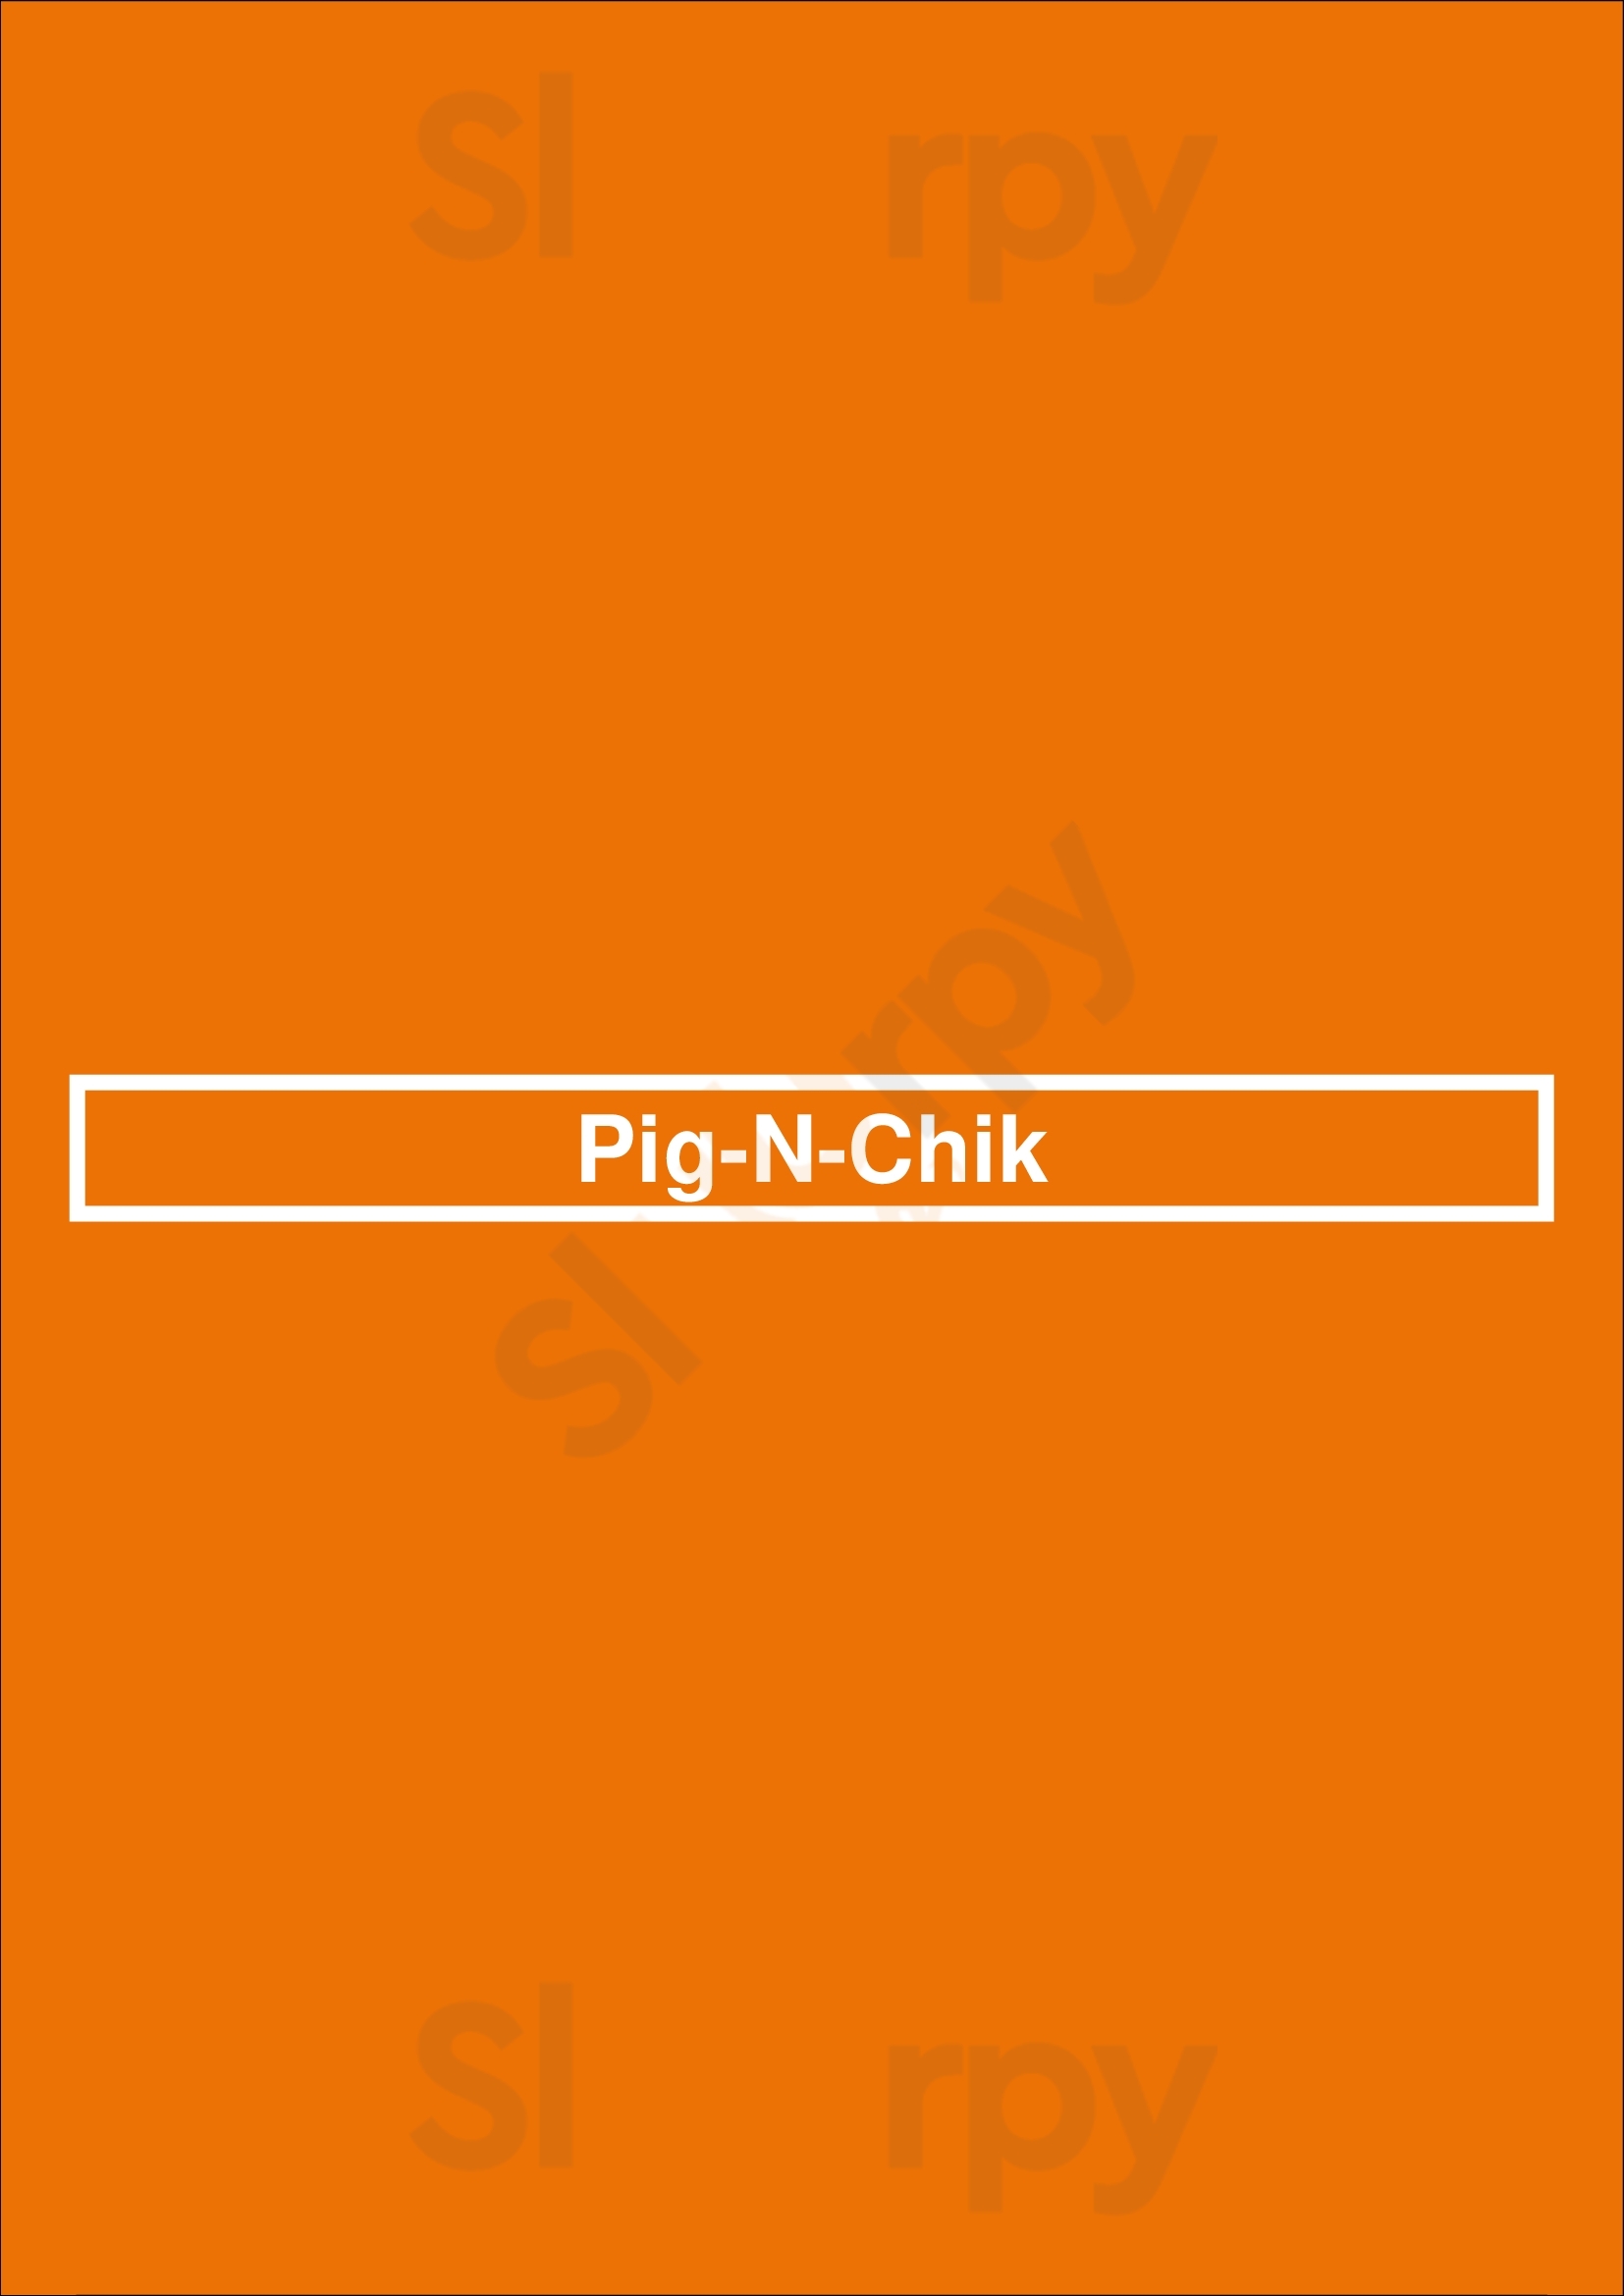 Pig-n-chik Atlanta Menu - 1